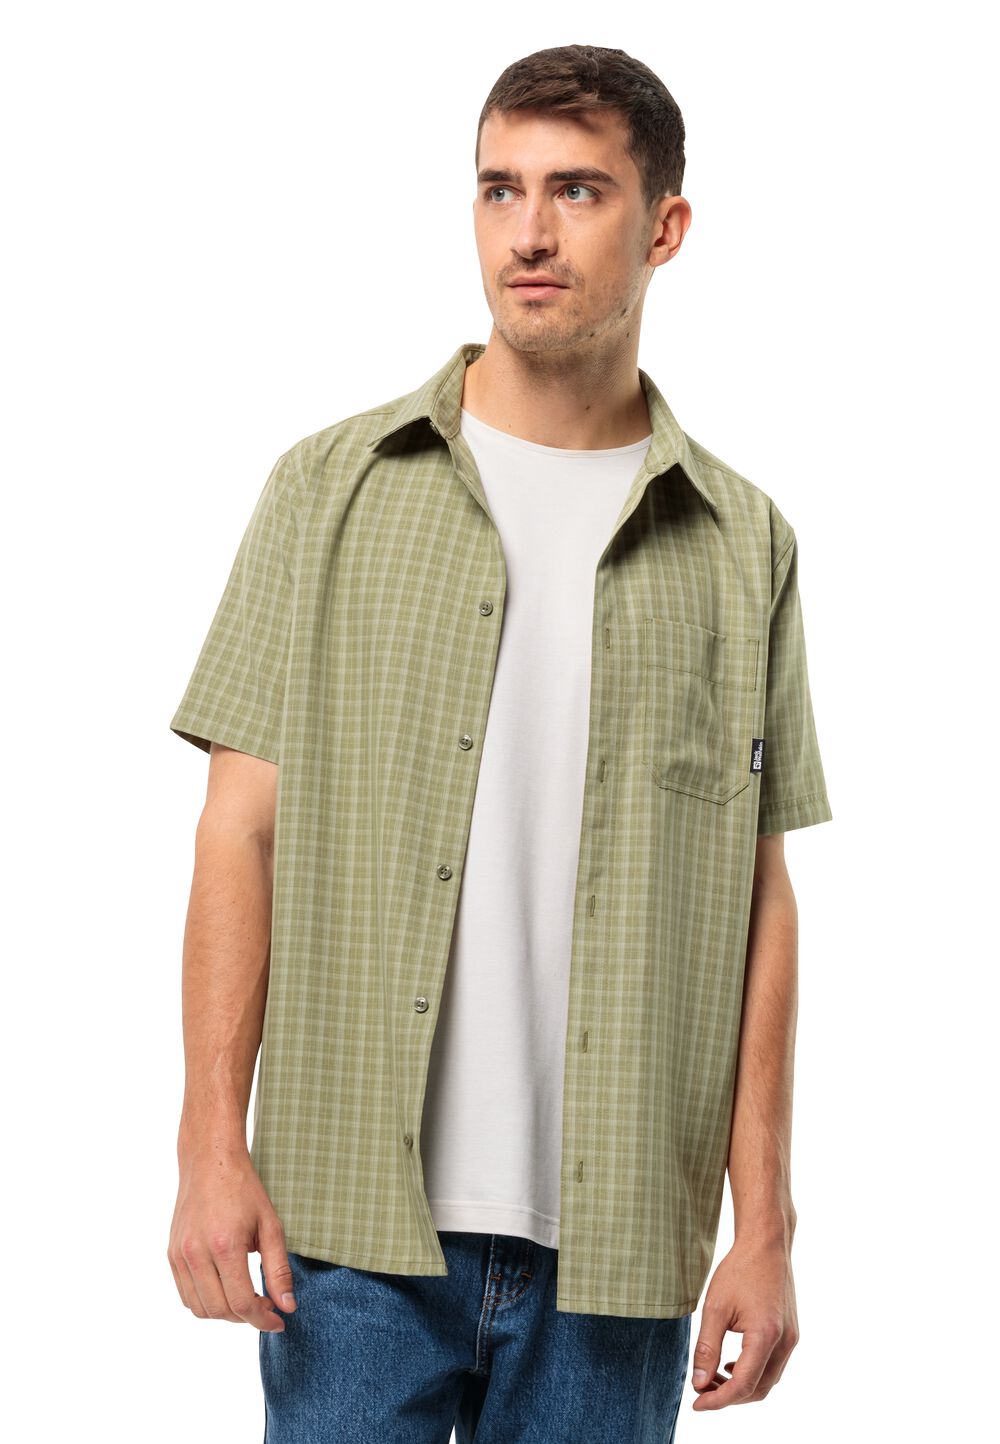 Jack Wolfskin Kurzarm Wanderhemd Herren EL Dorado Shirt Men XL braun bay leaf check von Jack Wolfskin